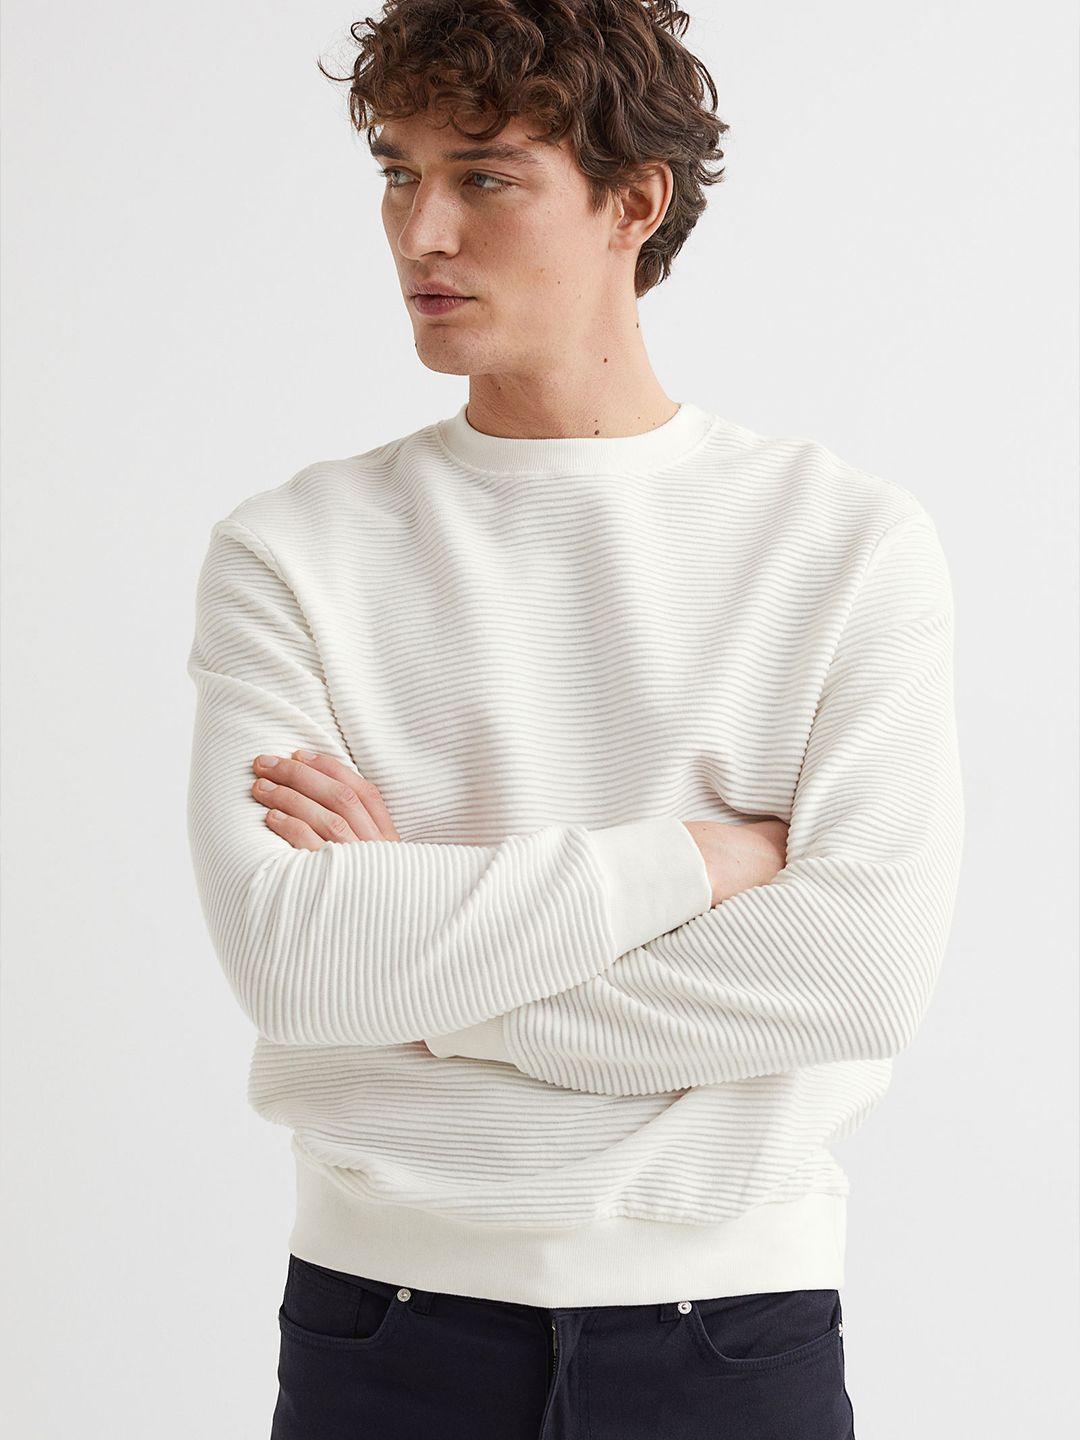 h&m-men-white-regular-fit-ribbed-sweatshirt